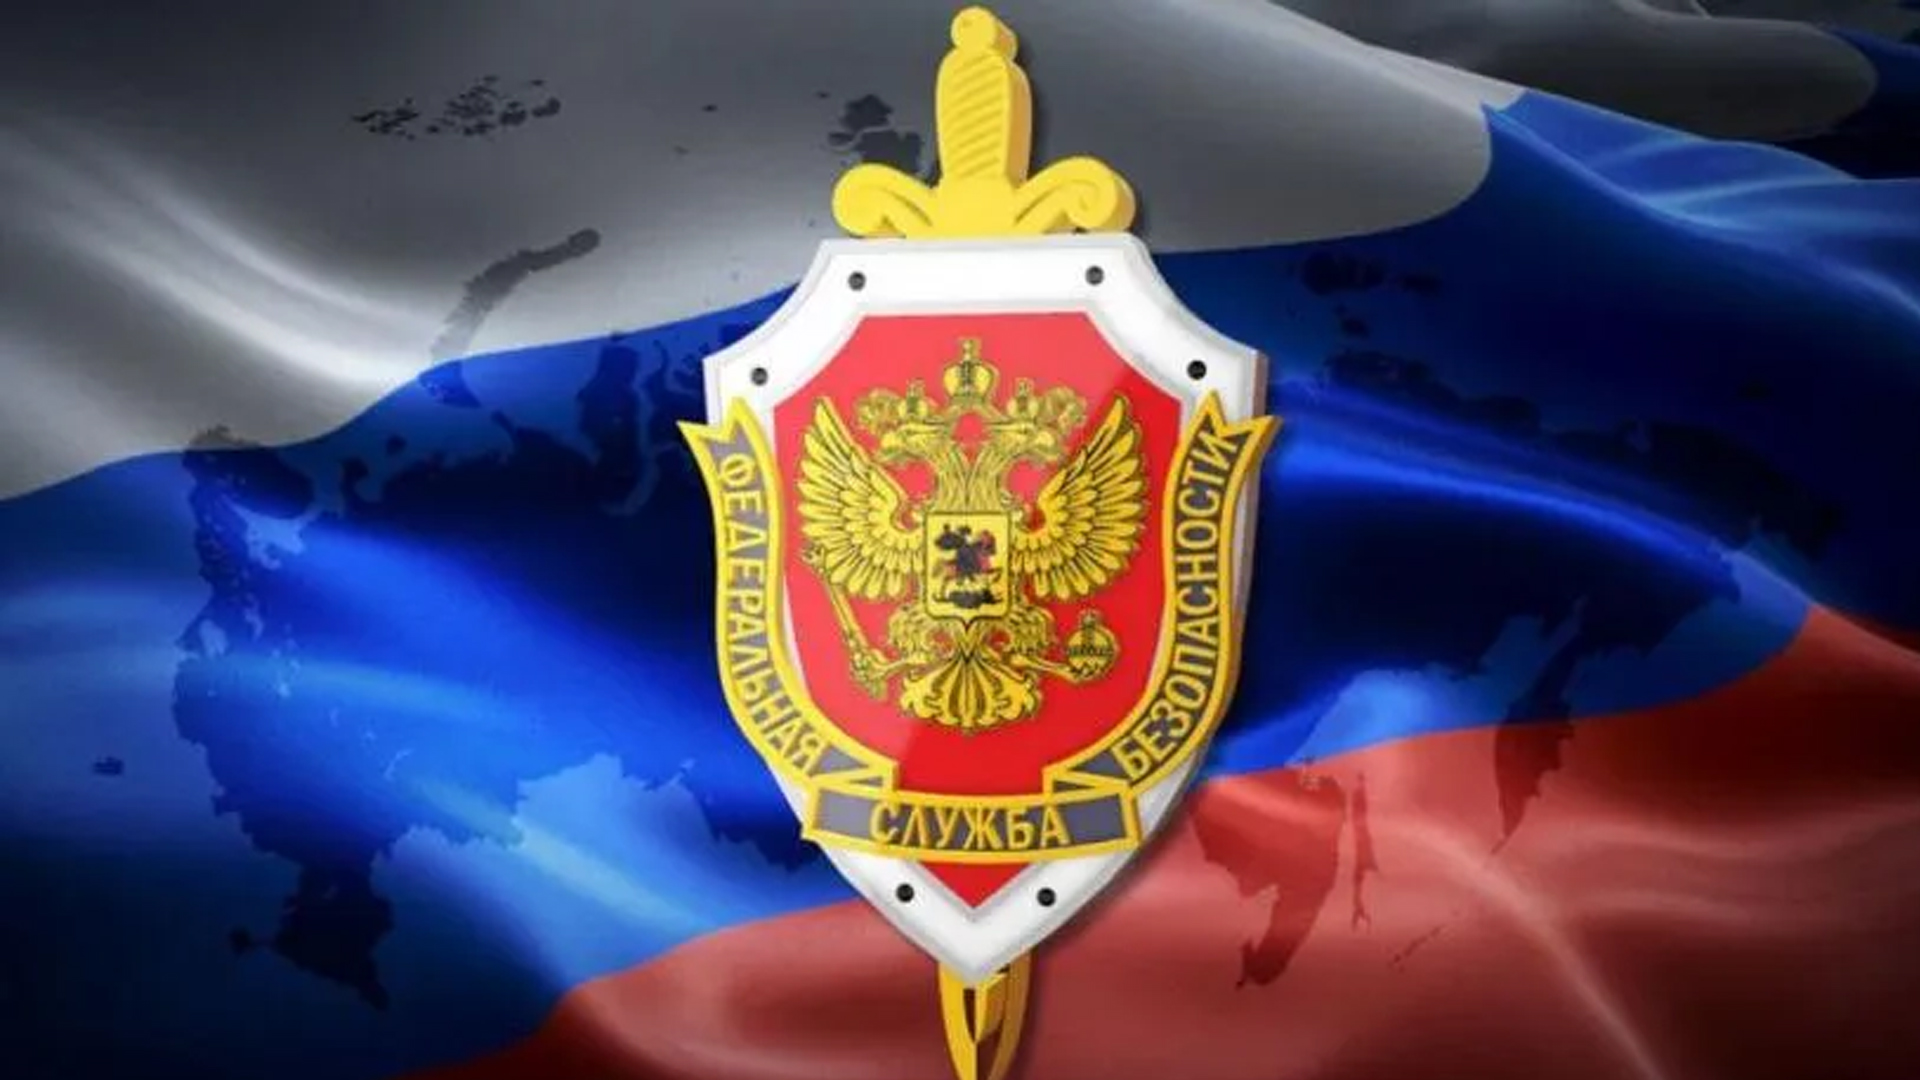 20 декабря 2018 год. Федеральная служба безопасности Российской Федерации герб.